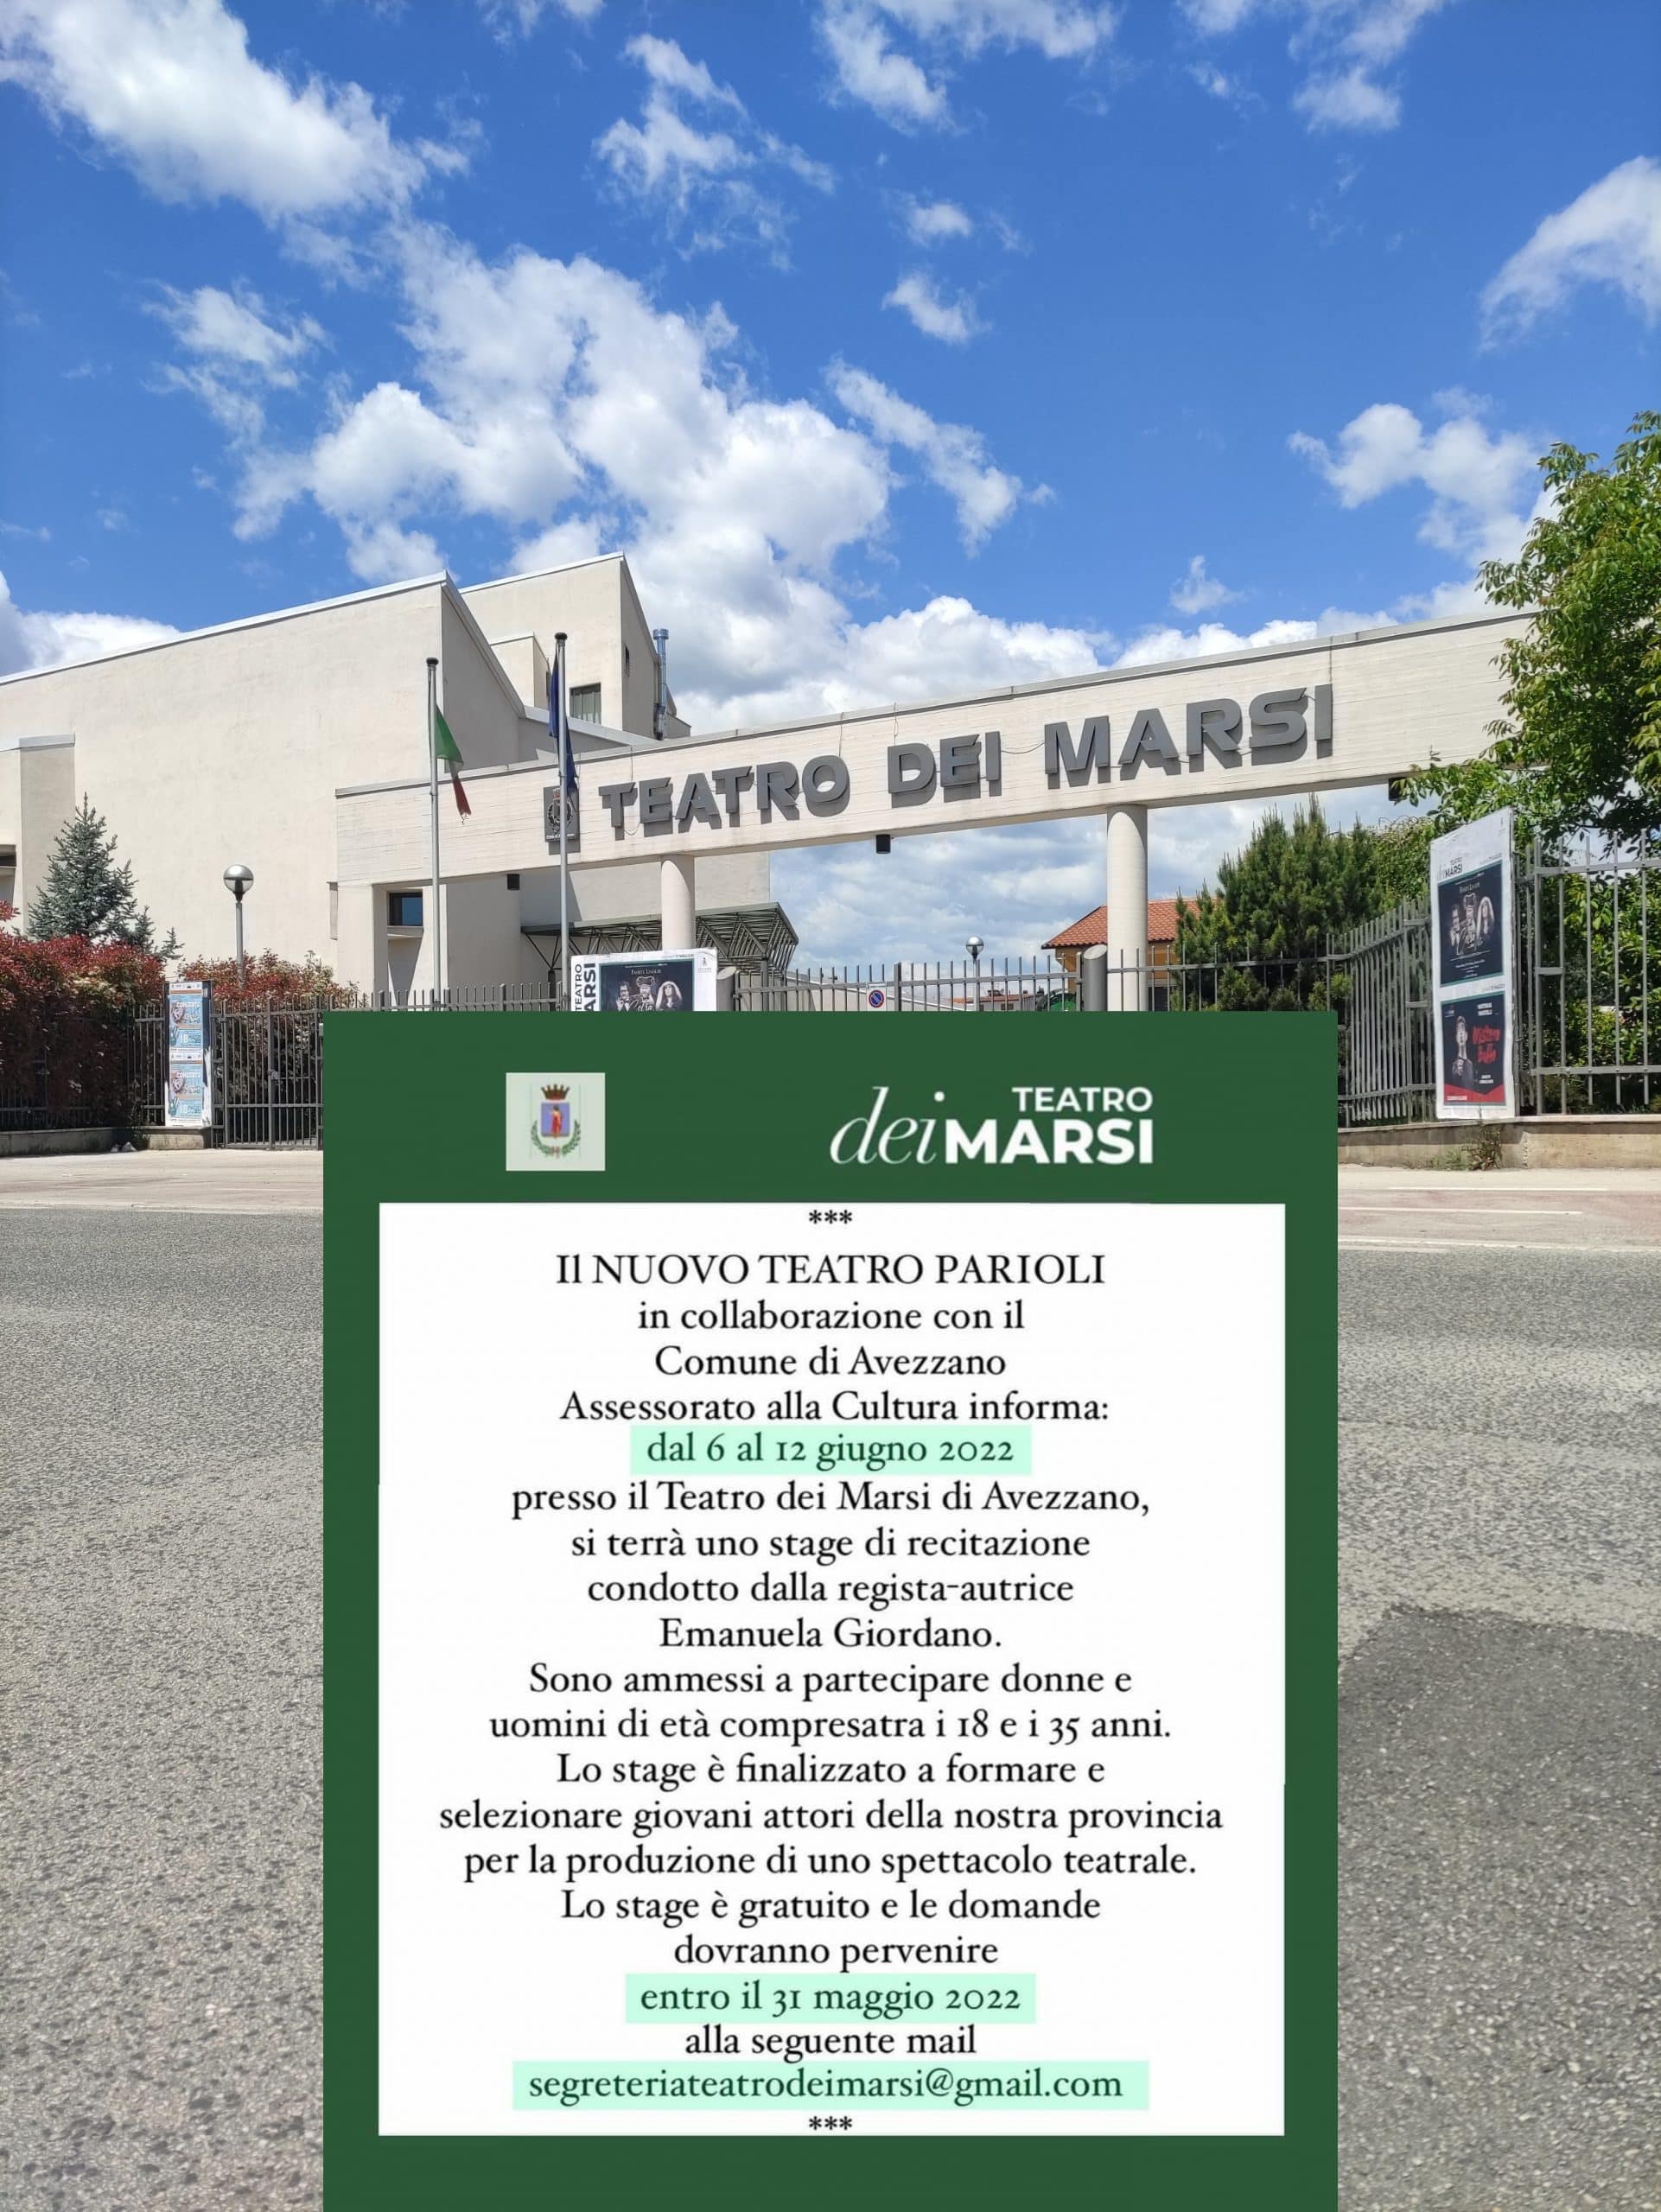 Stage di recitazione gratuito al Teatro dei Marsi, iscrizioni aperte fino al 31 maggio